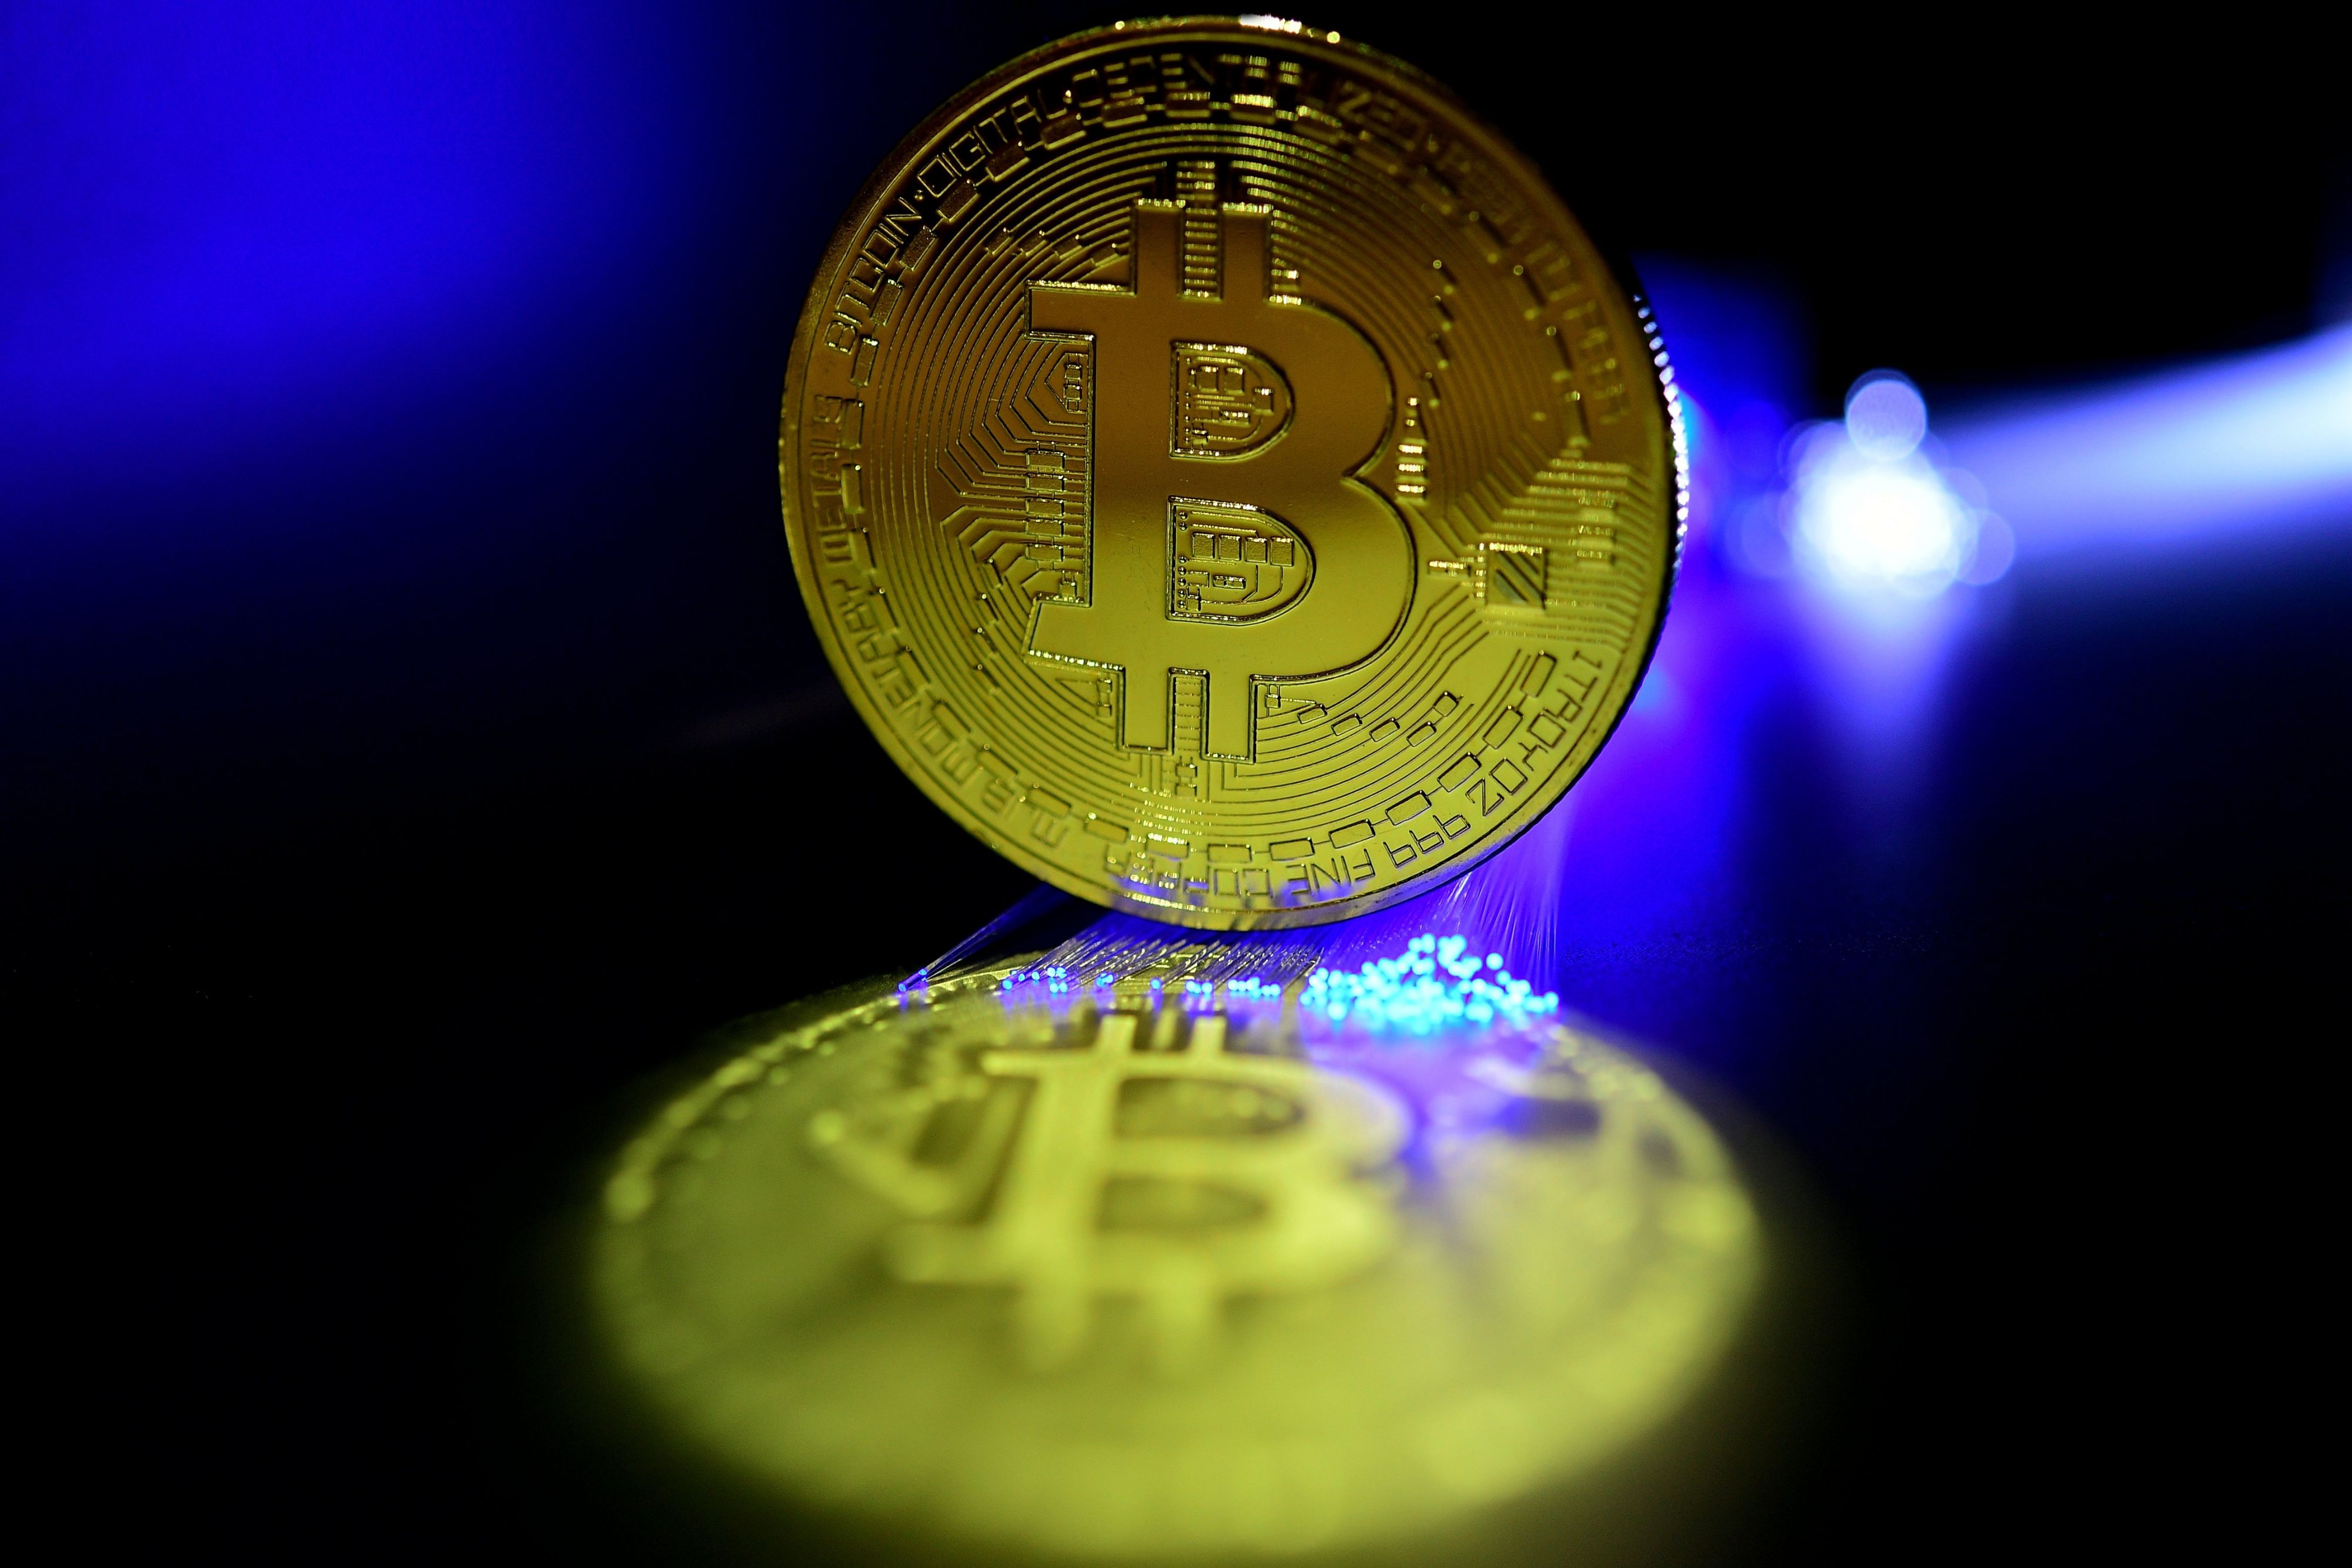 'Meeste beleggers laten bitcoin links liggen'